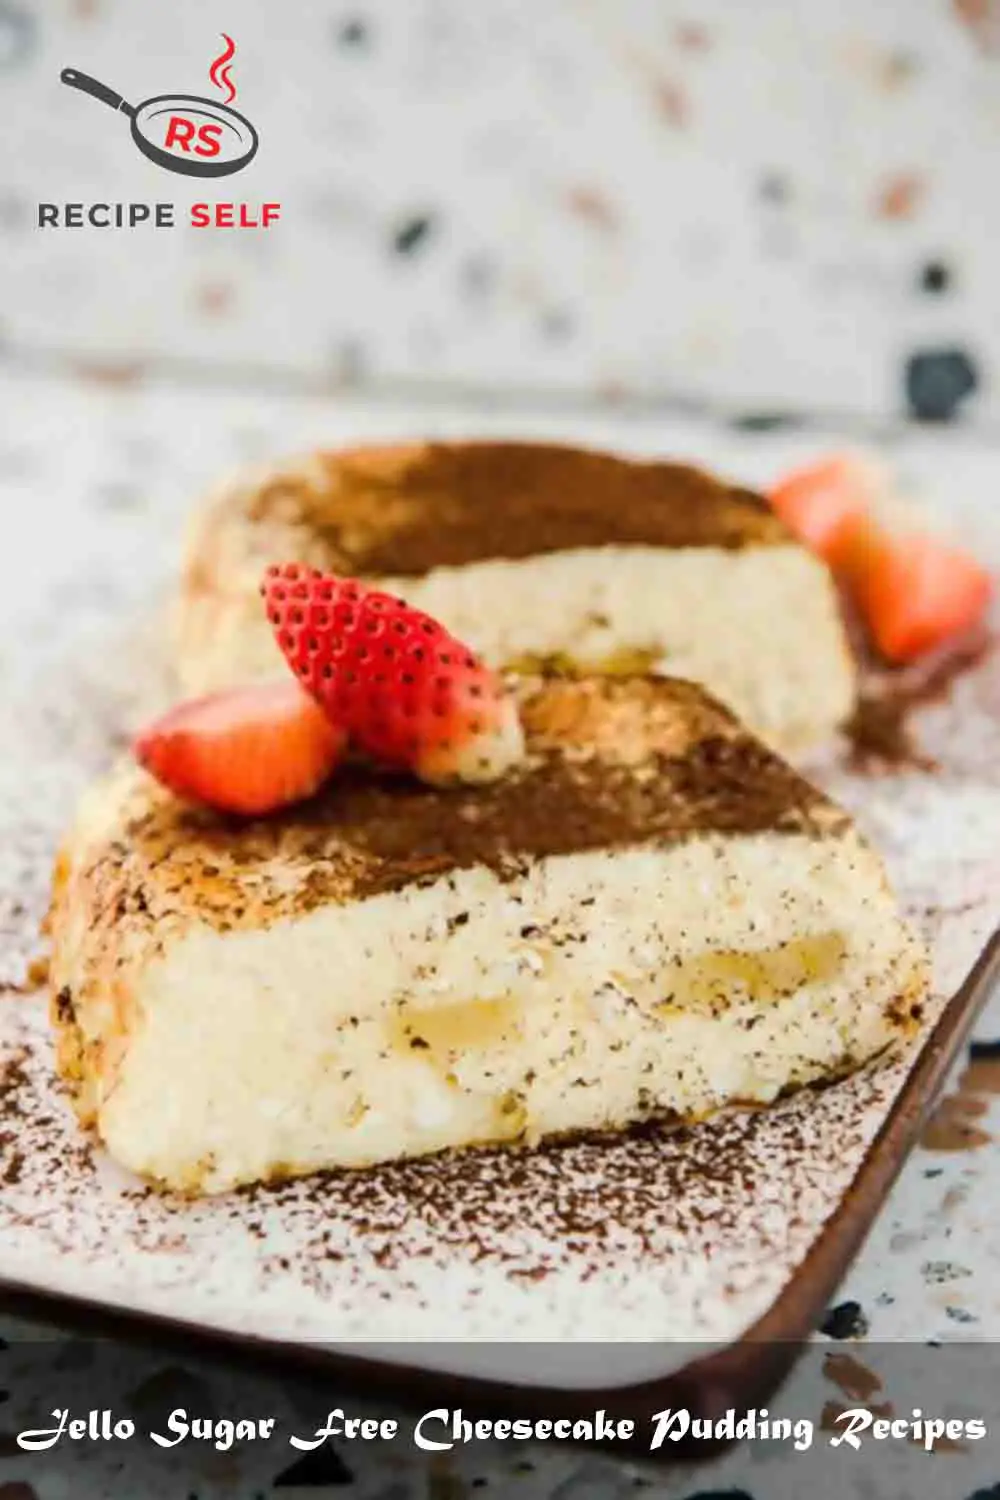 Jello Sugar Free Cheesecake Pudding Recipes